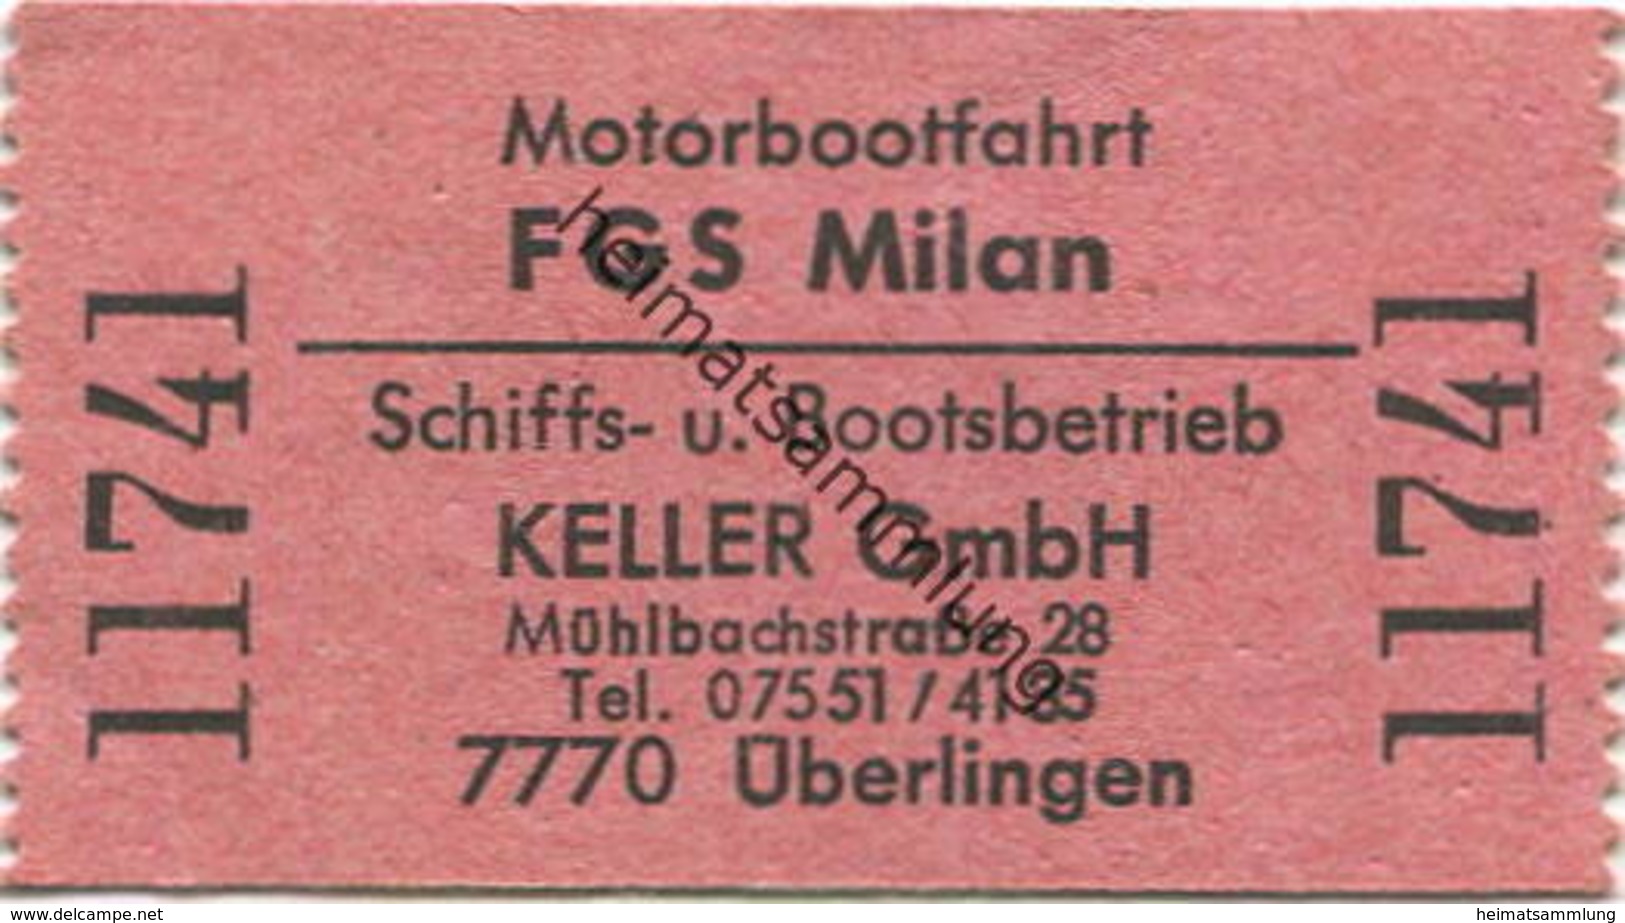 Deutschland - Motorbootfahrt FGS Milan - Schiffs- Und Bootsbetrieb Keller GmbH Überlingen - Fahrschein - Europe